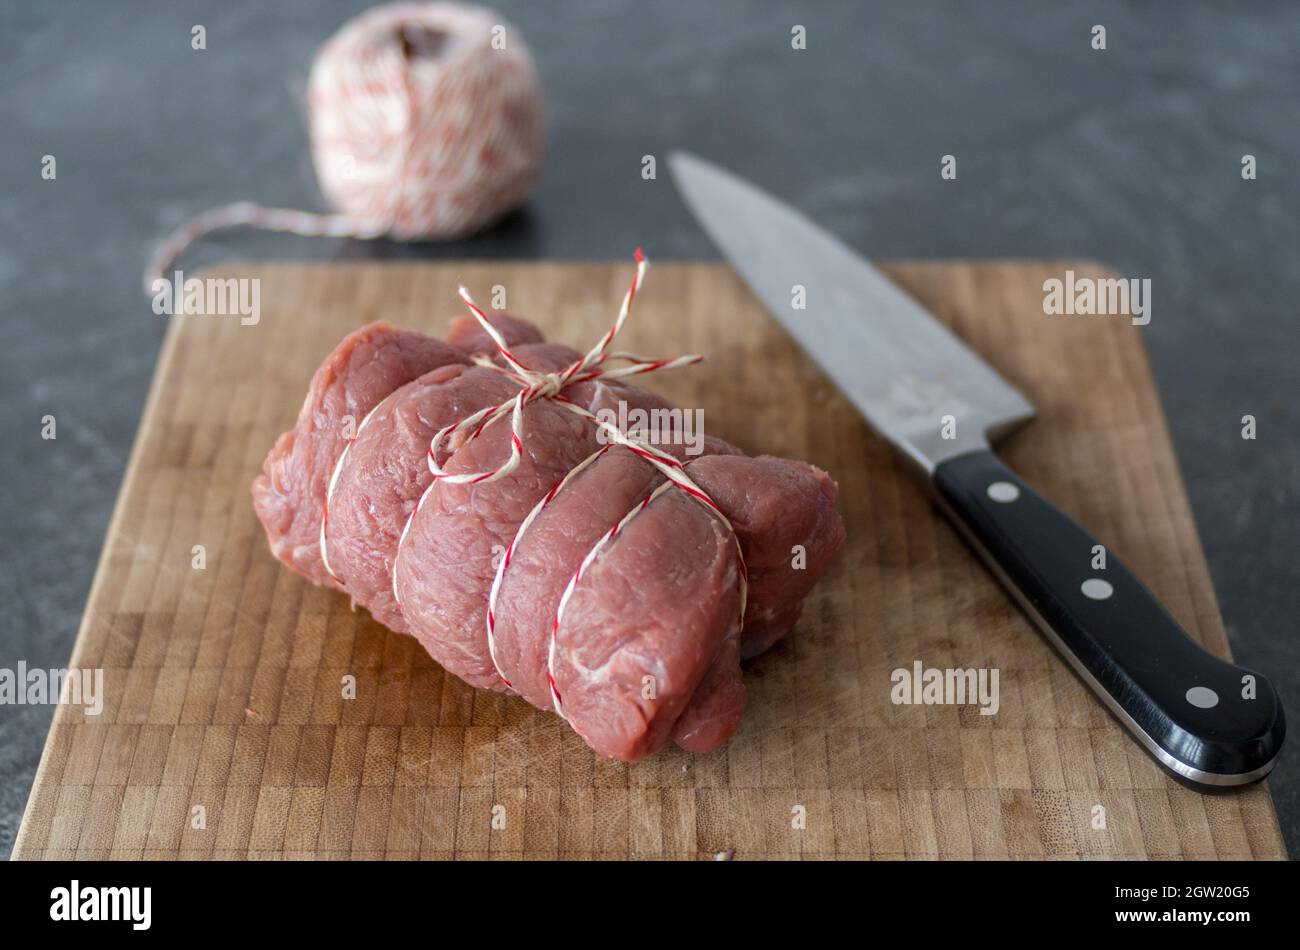 Fleisch in einer Rolle für Eine Brate mit Küchenzinn gebunden  Stockfotografie - Alamy